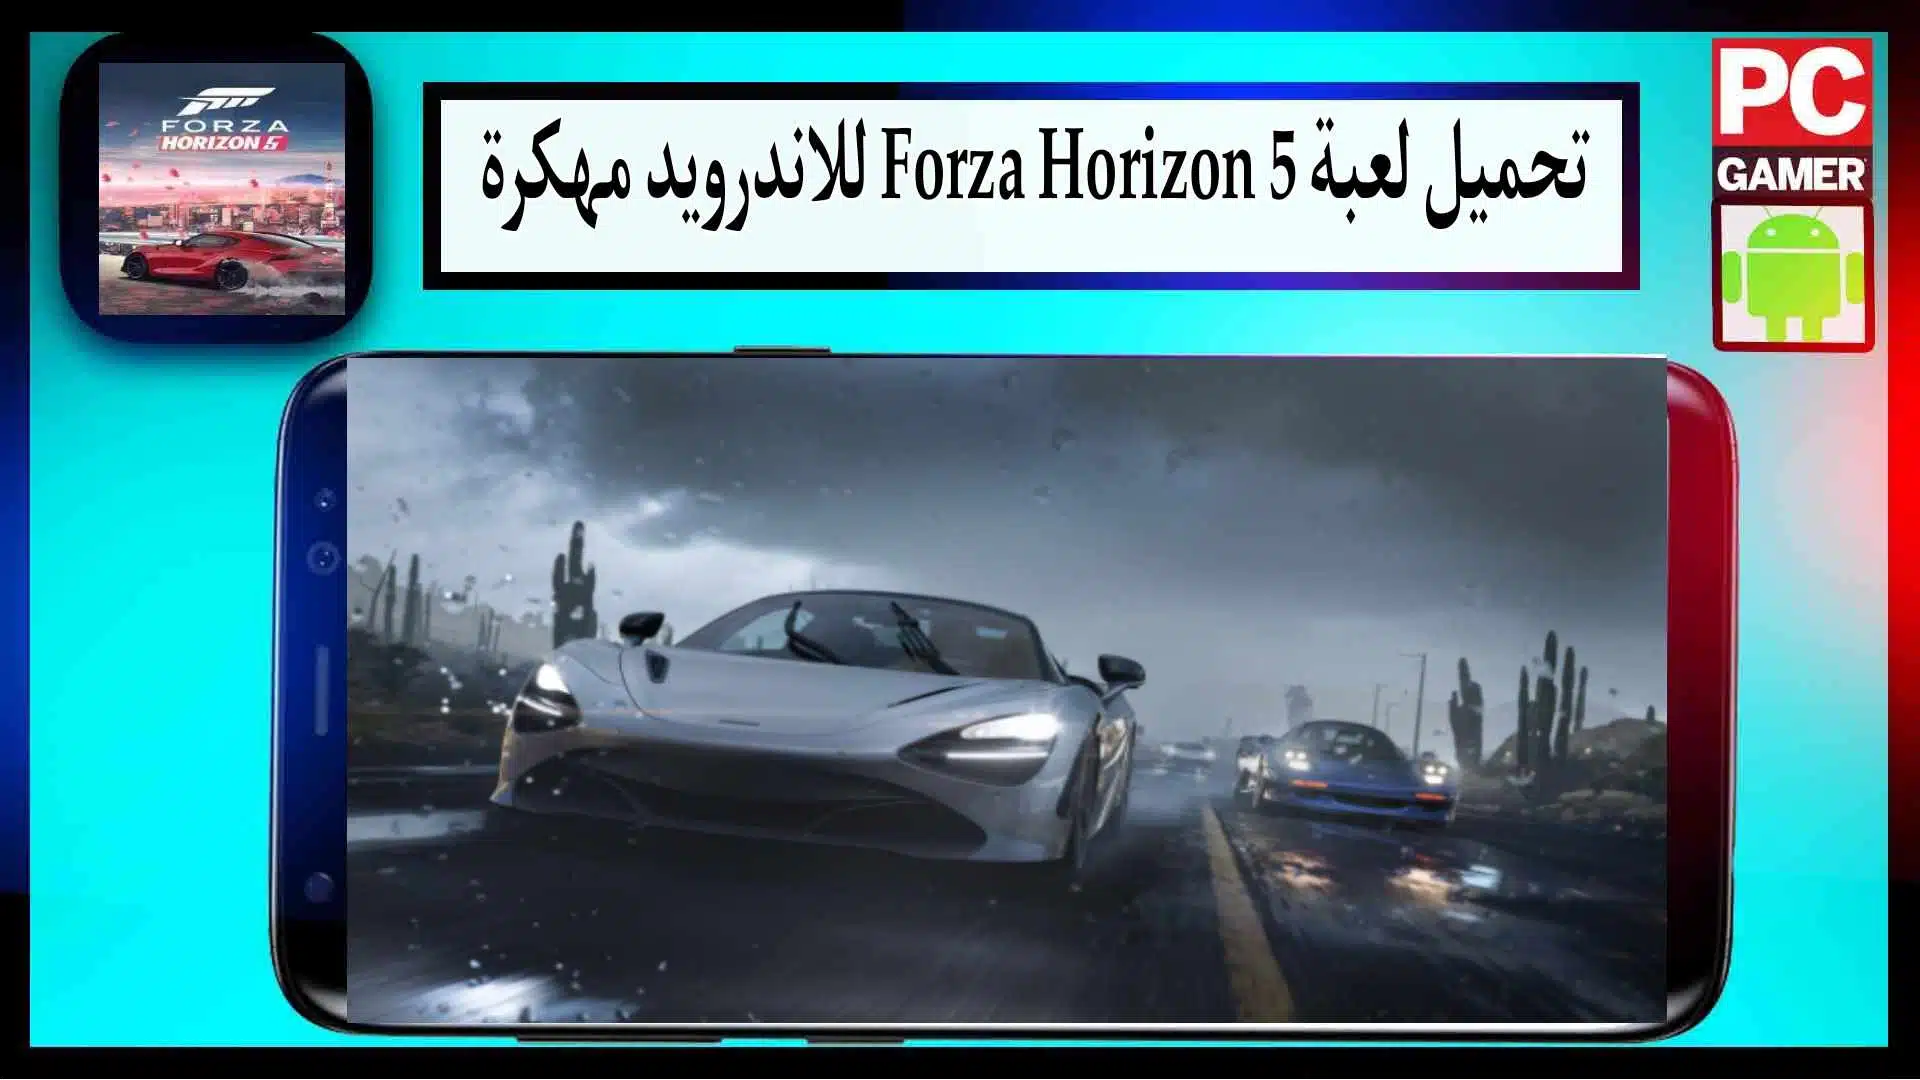 تحميل لعبة فورزا هورايزن forza horizon 5 للكمبيوتر وللاندرويد من ميديا فاير